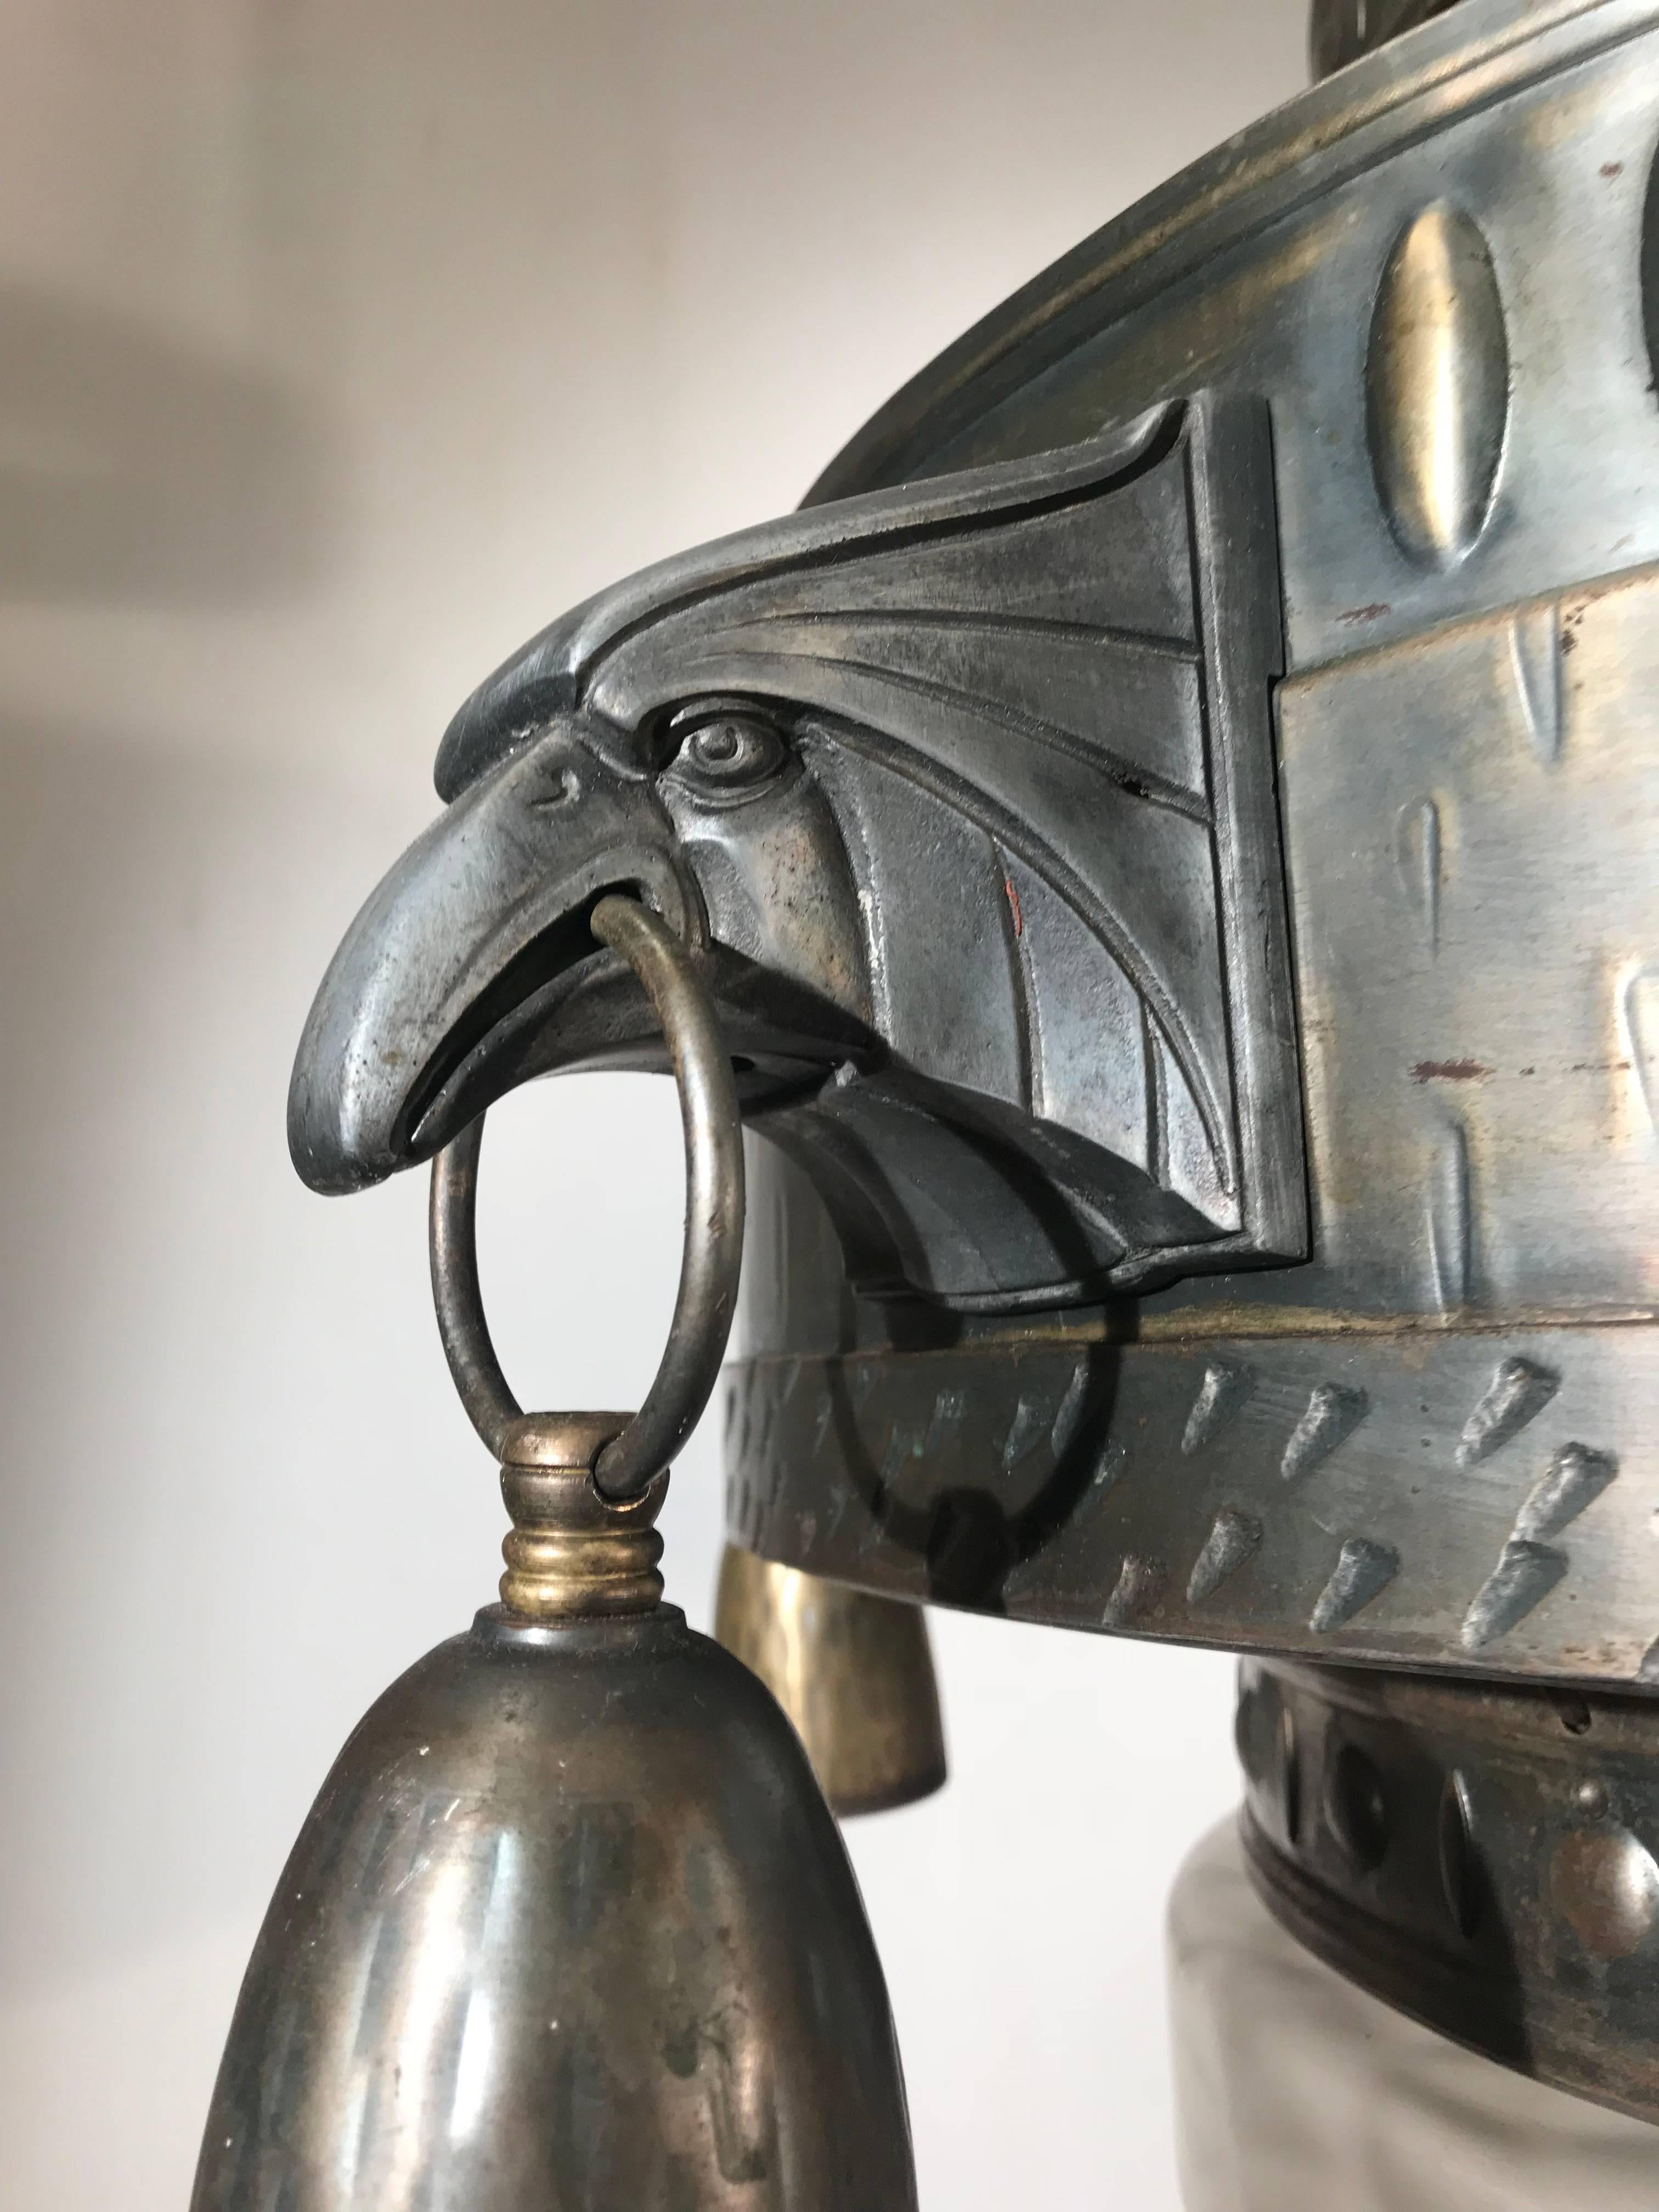 Einzigartige Arts & Crafts-Leuchte mit stilisierten amerikanischen Adlerkopfskulpturen.

Dieser prächtige siebenflammige Kronleuchter im amerikanischen Art-Déco-Stil ist ein weiterer unserer großartigen Fundstücke aus jüngster Zeit. Inspiriert von